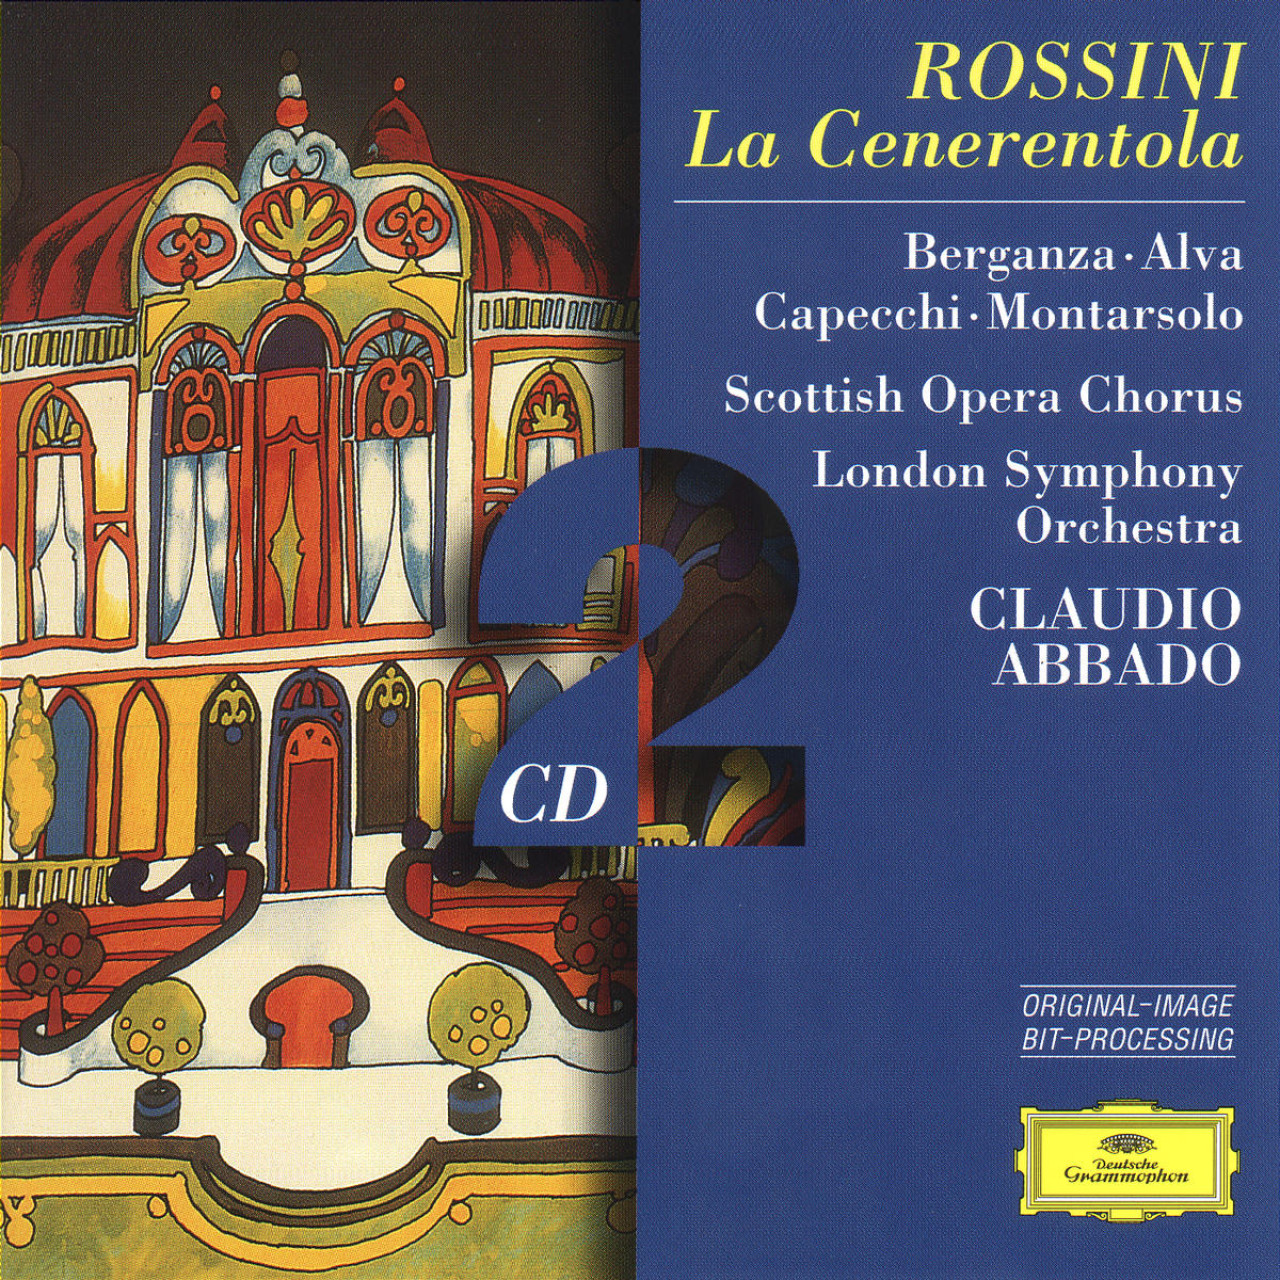 廃盤 アバド ロッシーニ シンデレラ チェネレントラ ベルガンサ グリエルミ アルヴァ ロンドン交響楽団 ゼッダ Rossini Cenerentola Abbado